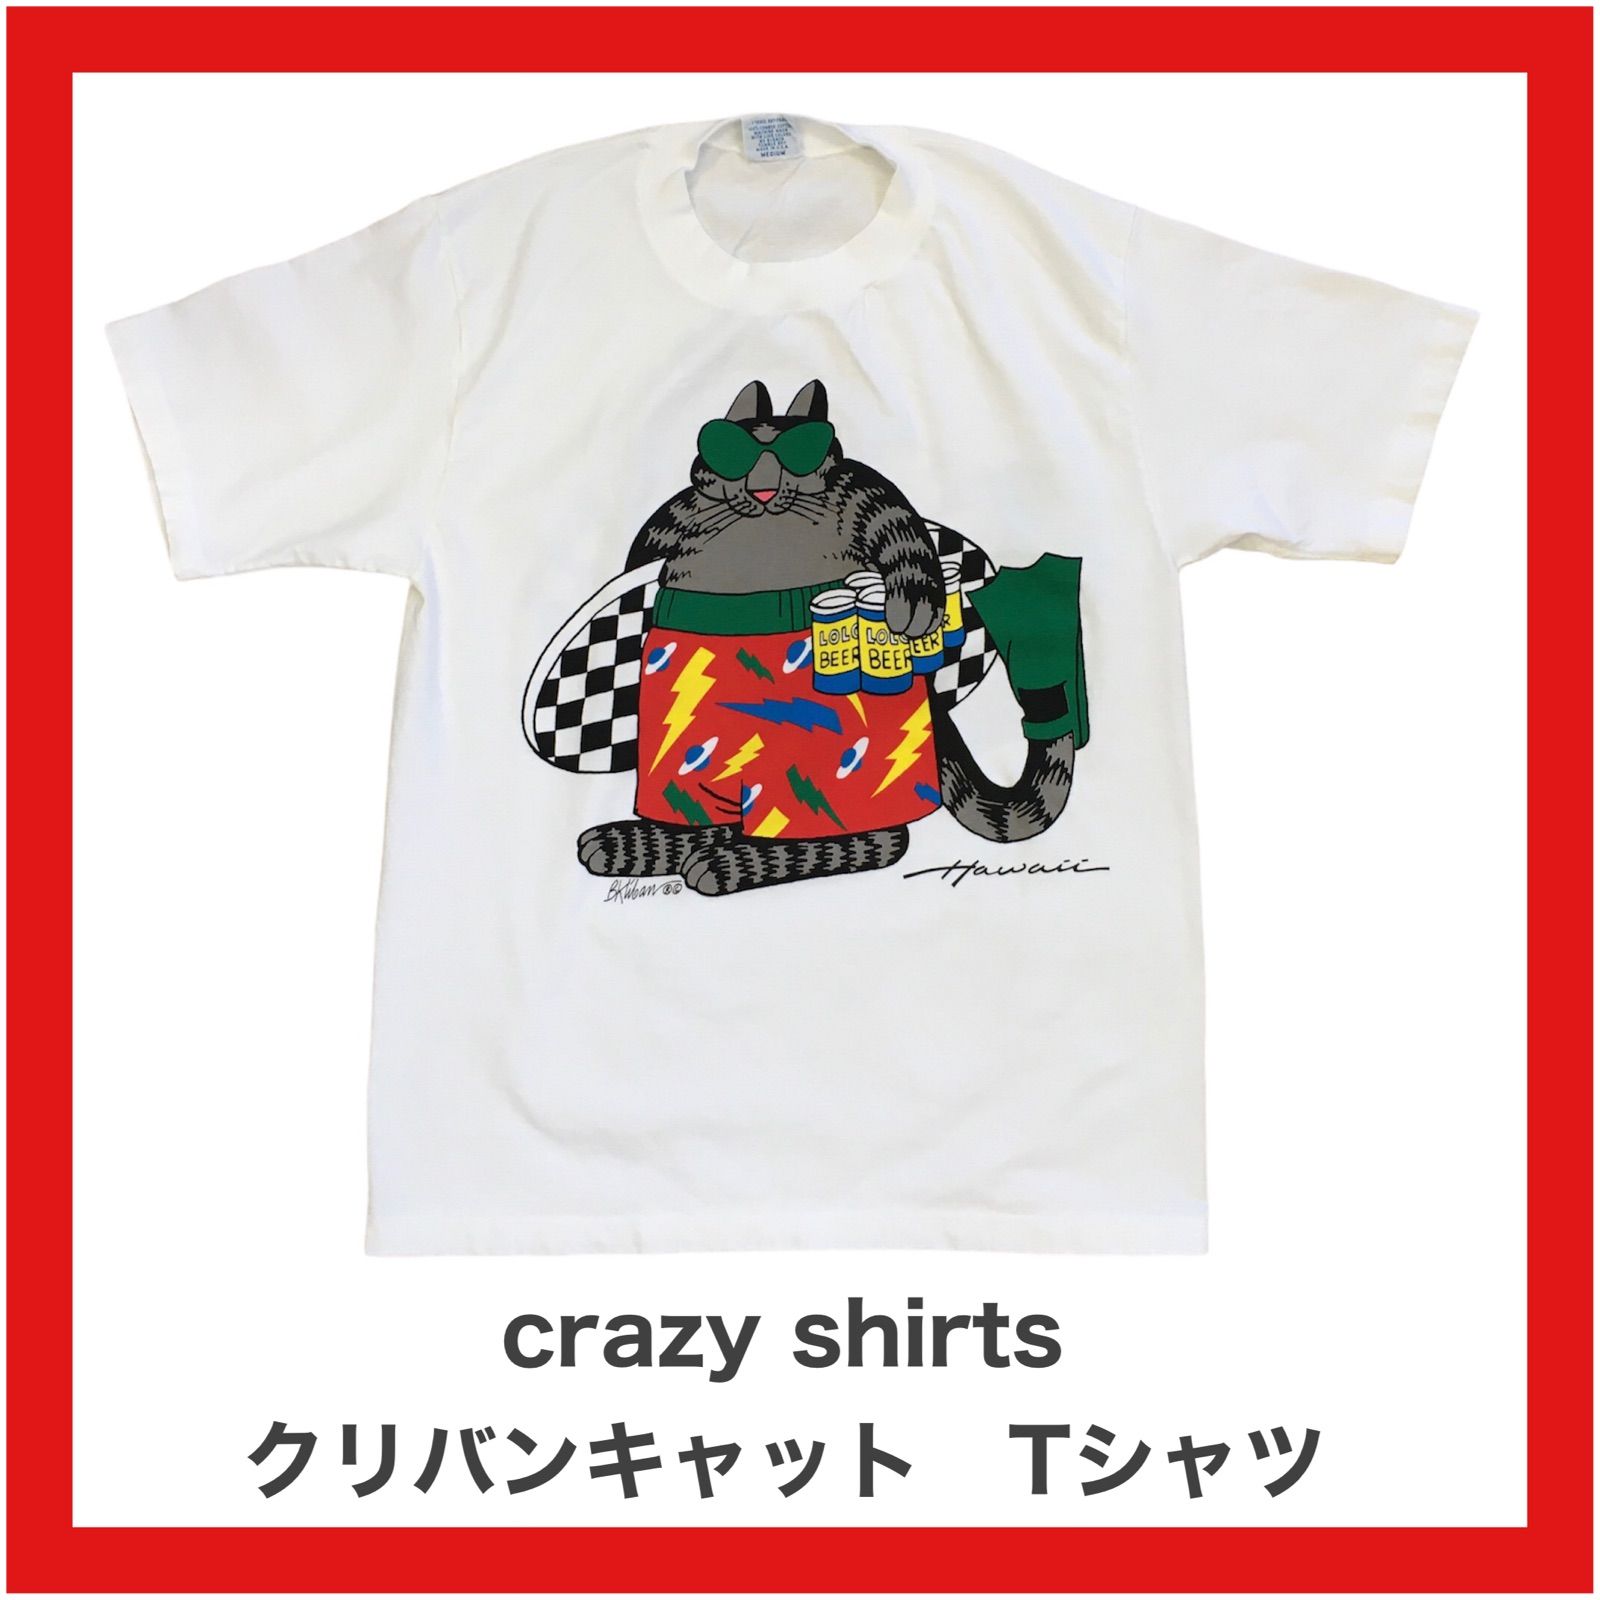 その他made in USA ハワイ クリバンキャット crazy shirts - www